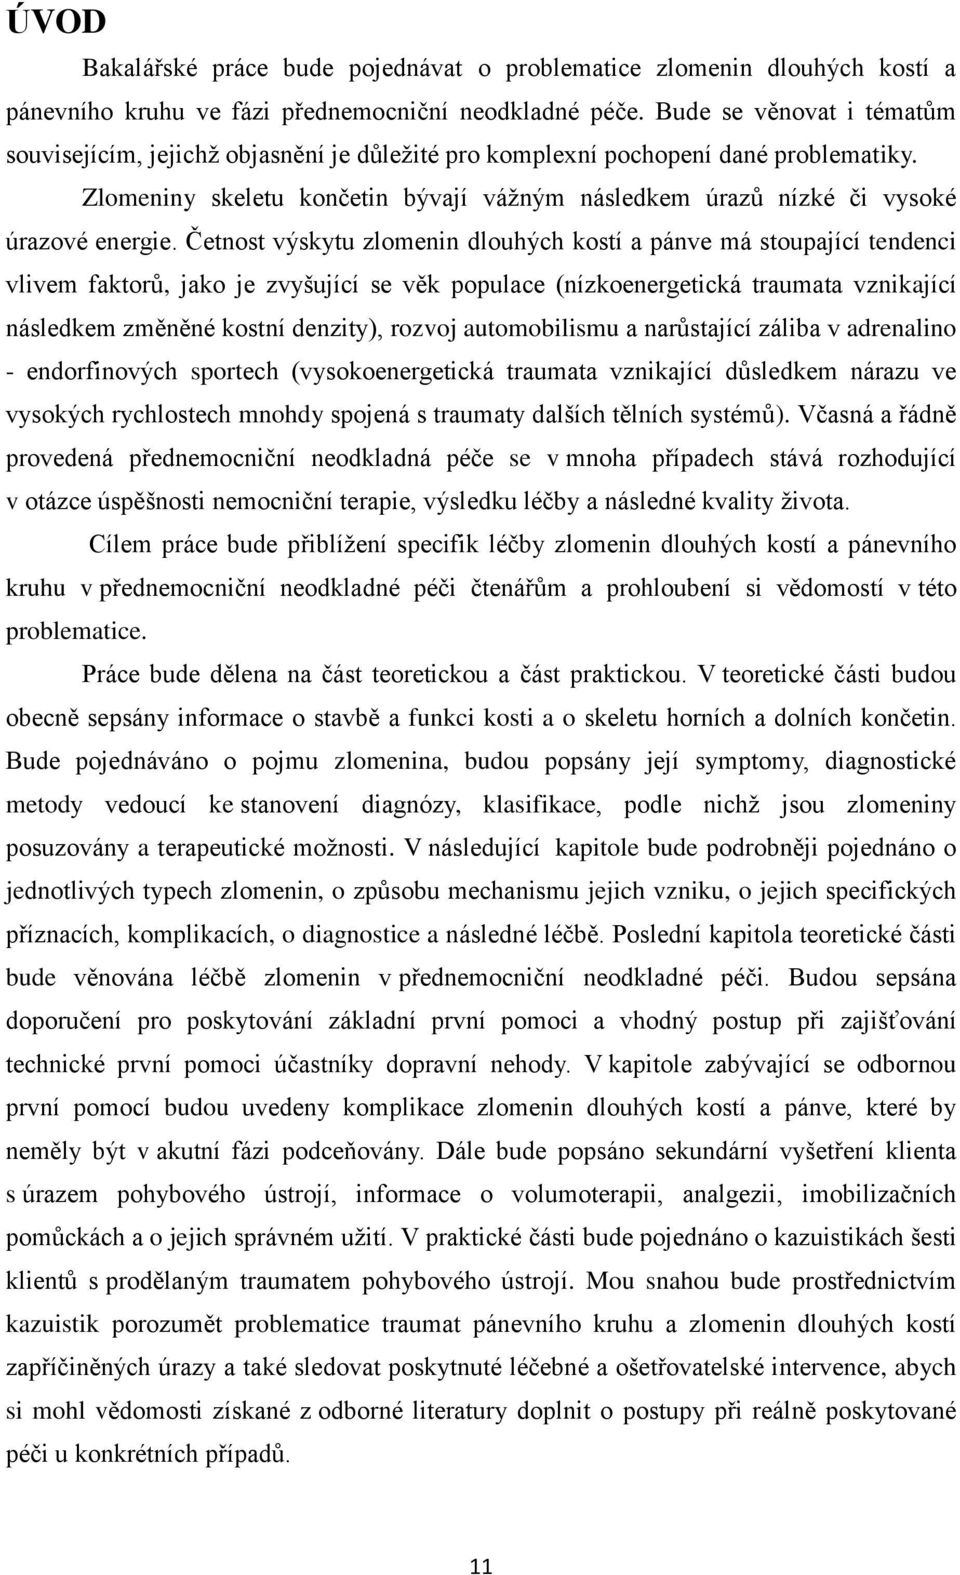 BAKALÁŘSKÁ PRÁCE 2014 David Dostál - PDF Stažení zdarma